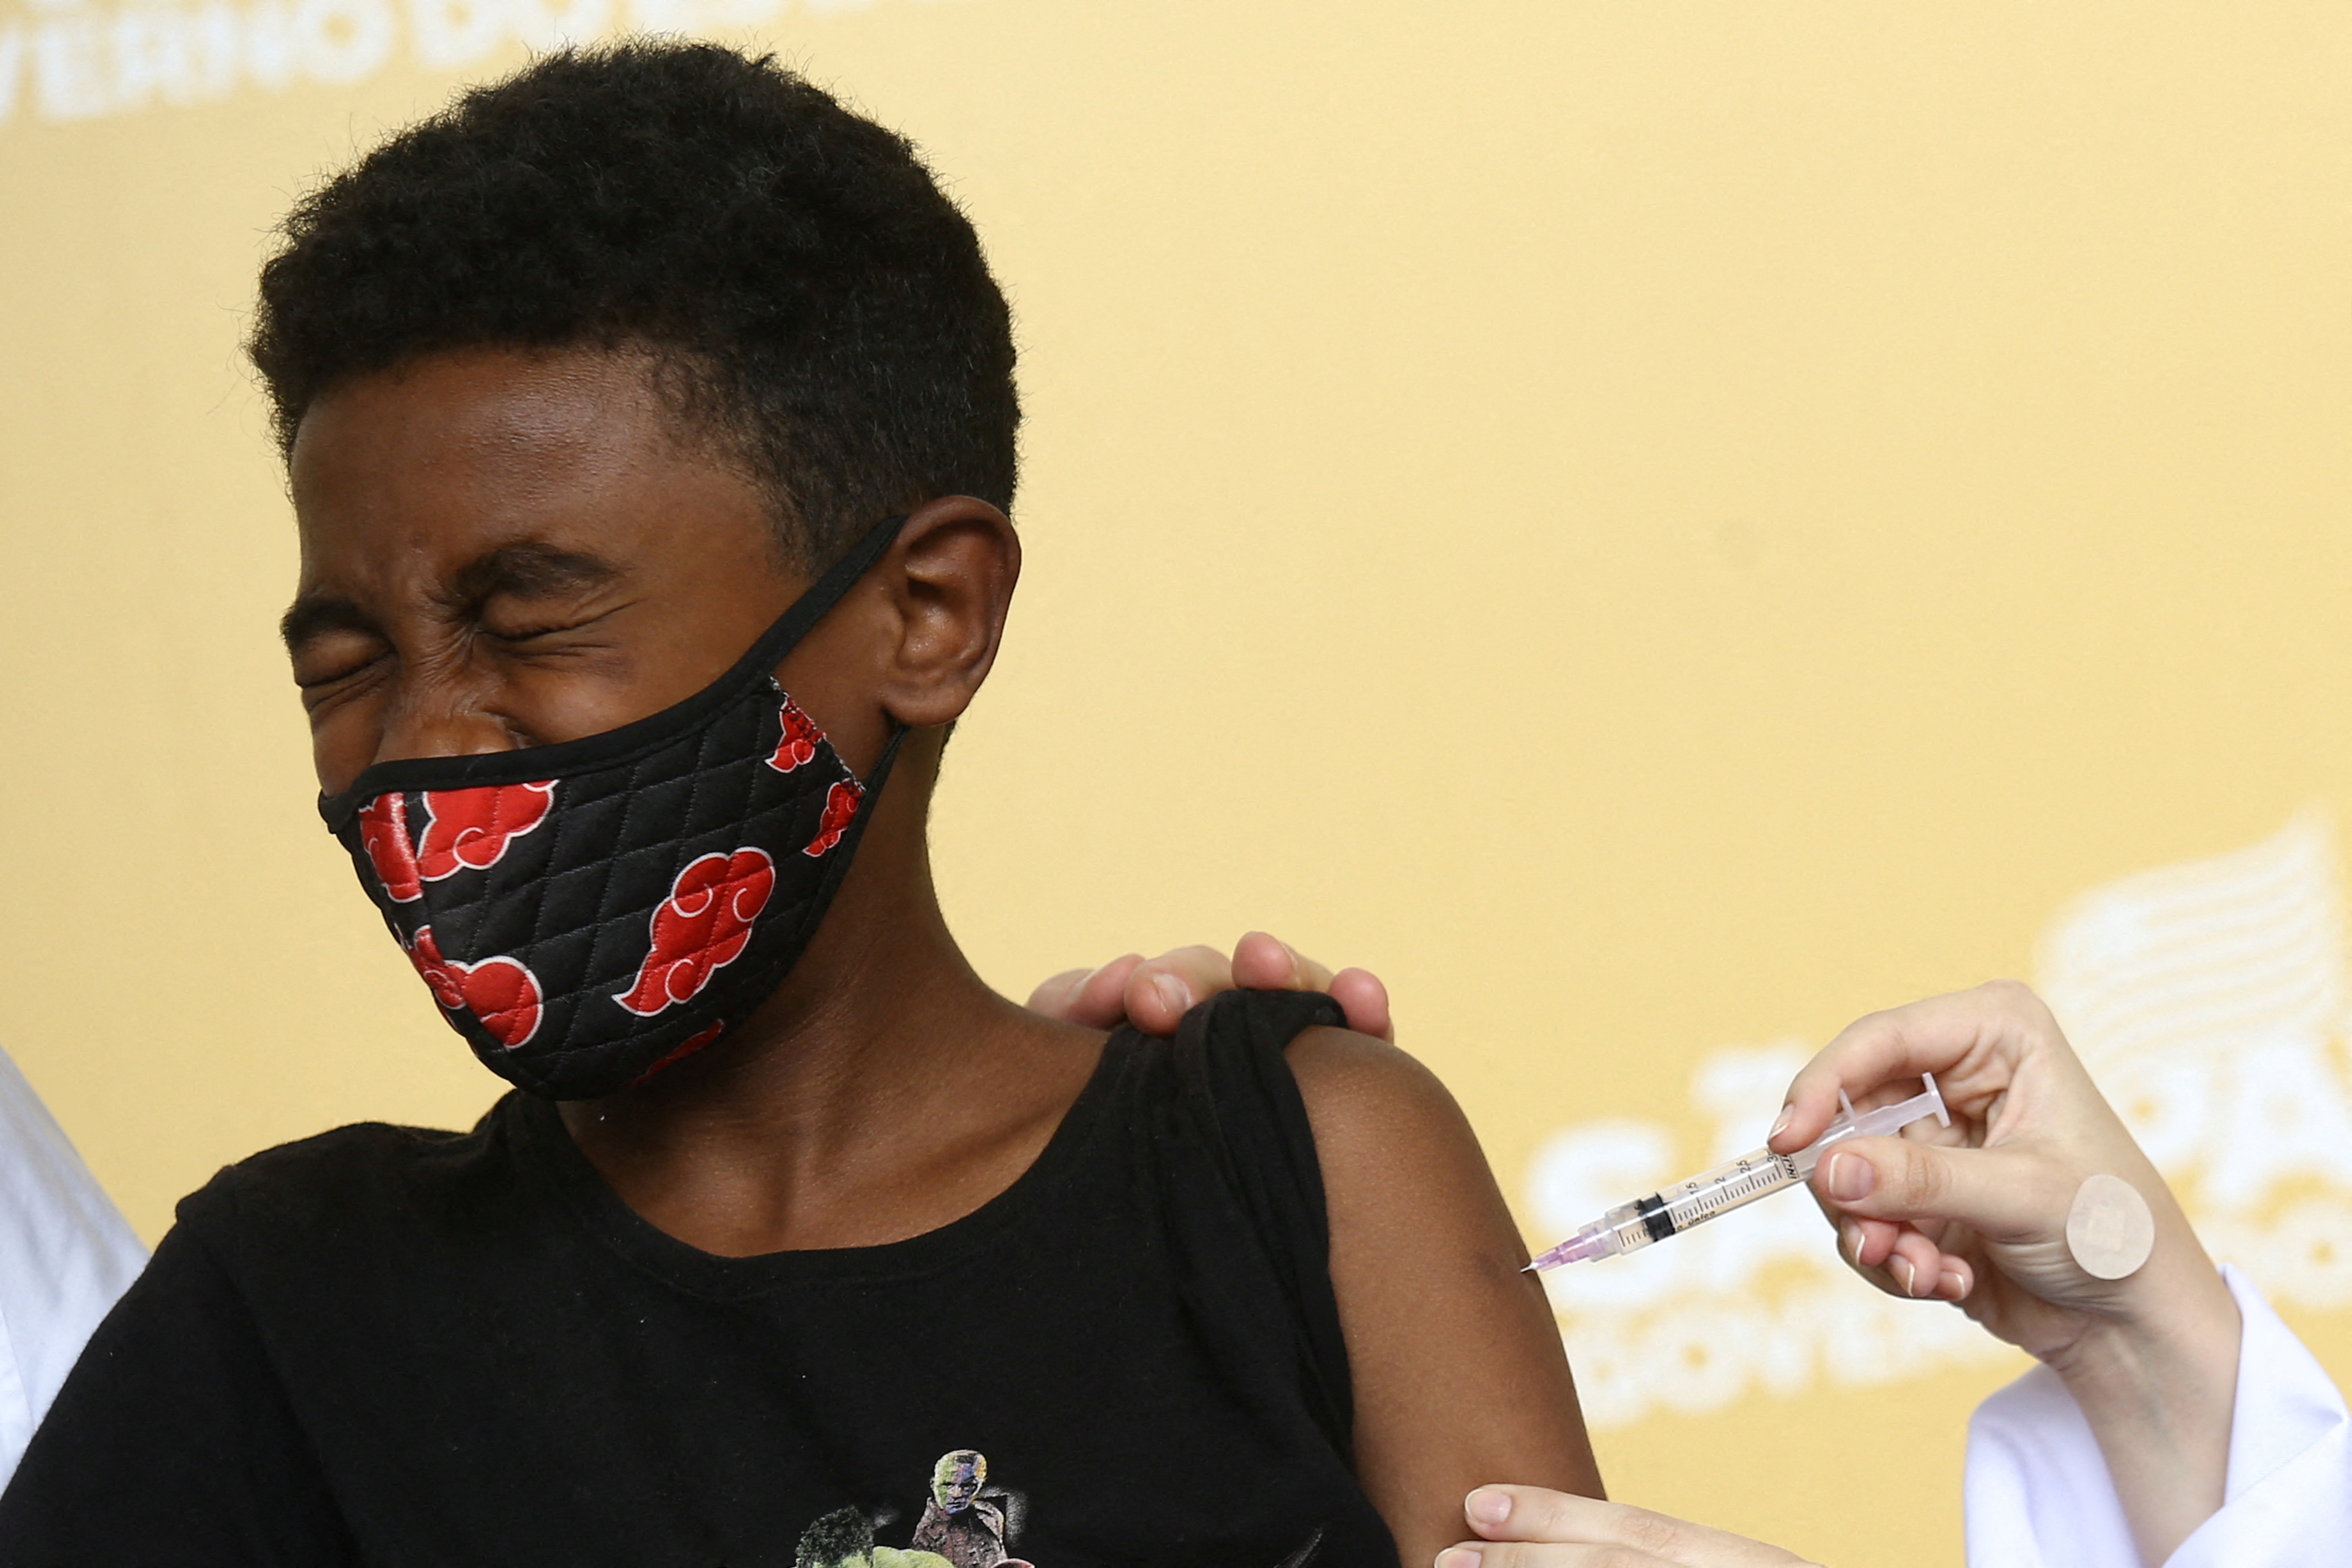 Children receive COVID-19 vaccine in Sao Paulo